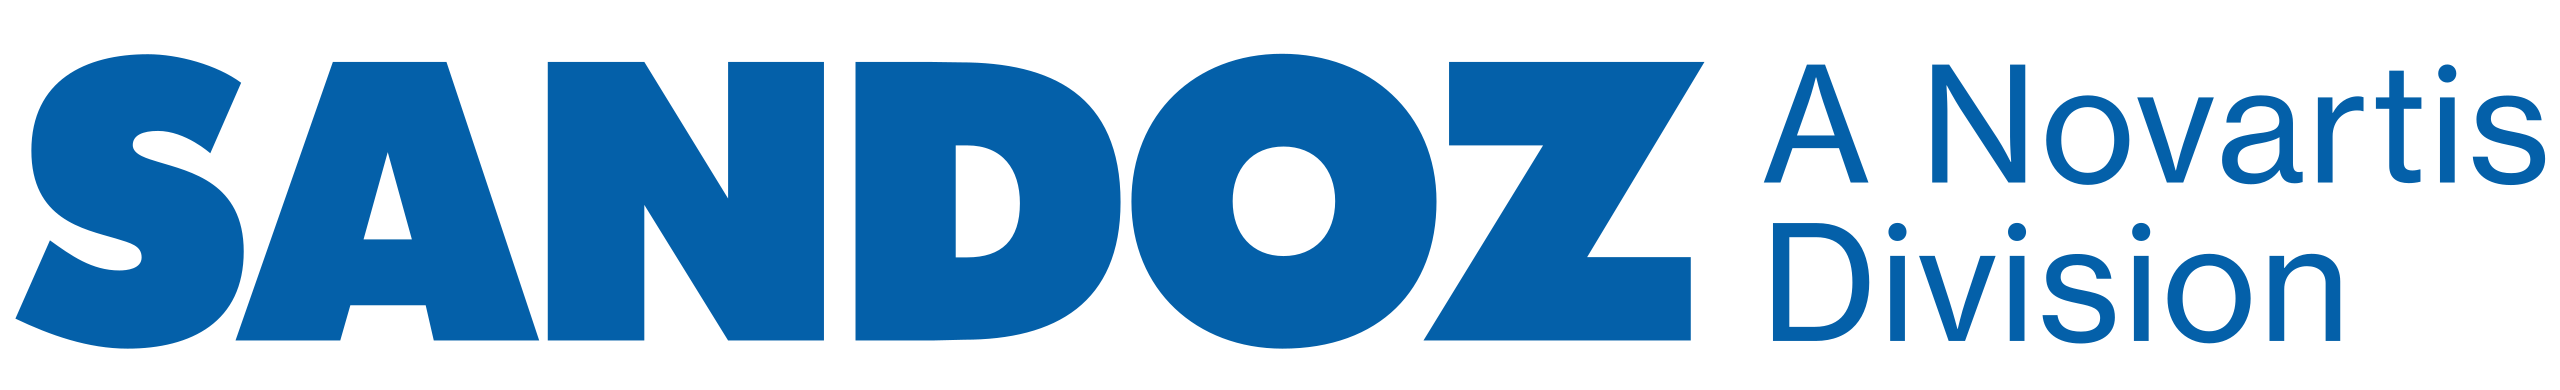 logo Sandoz